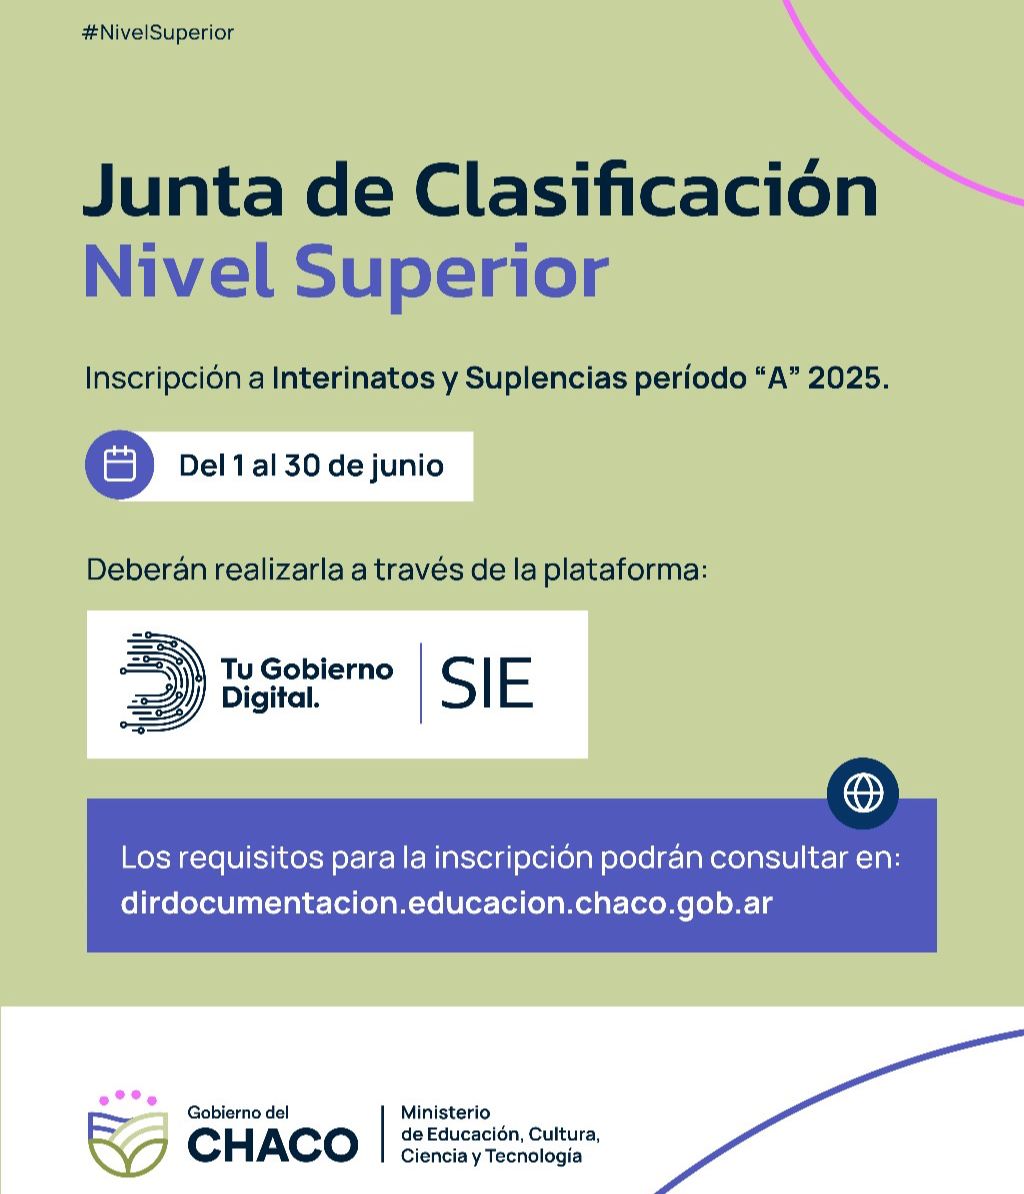 JUNTA DE CLASIFICACIÓN DE NIVEL SUPERIOR:  INSCRIPCIÓN A INTERINATOS Y SUPLENCIAS 2025